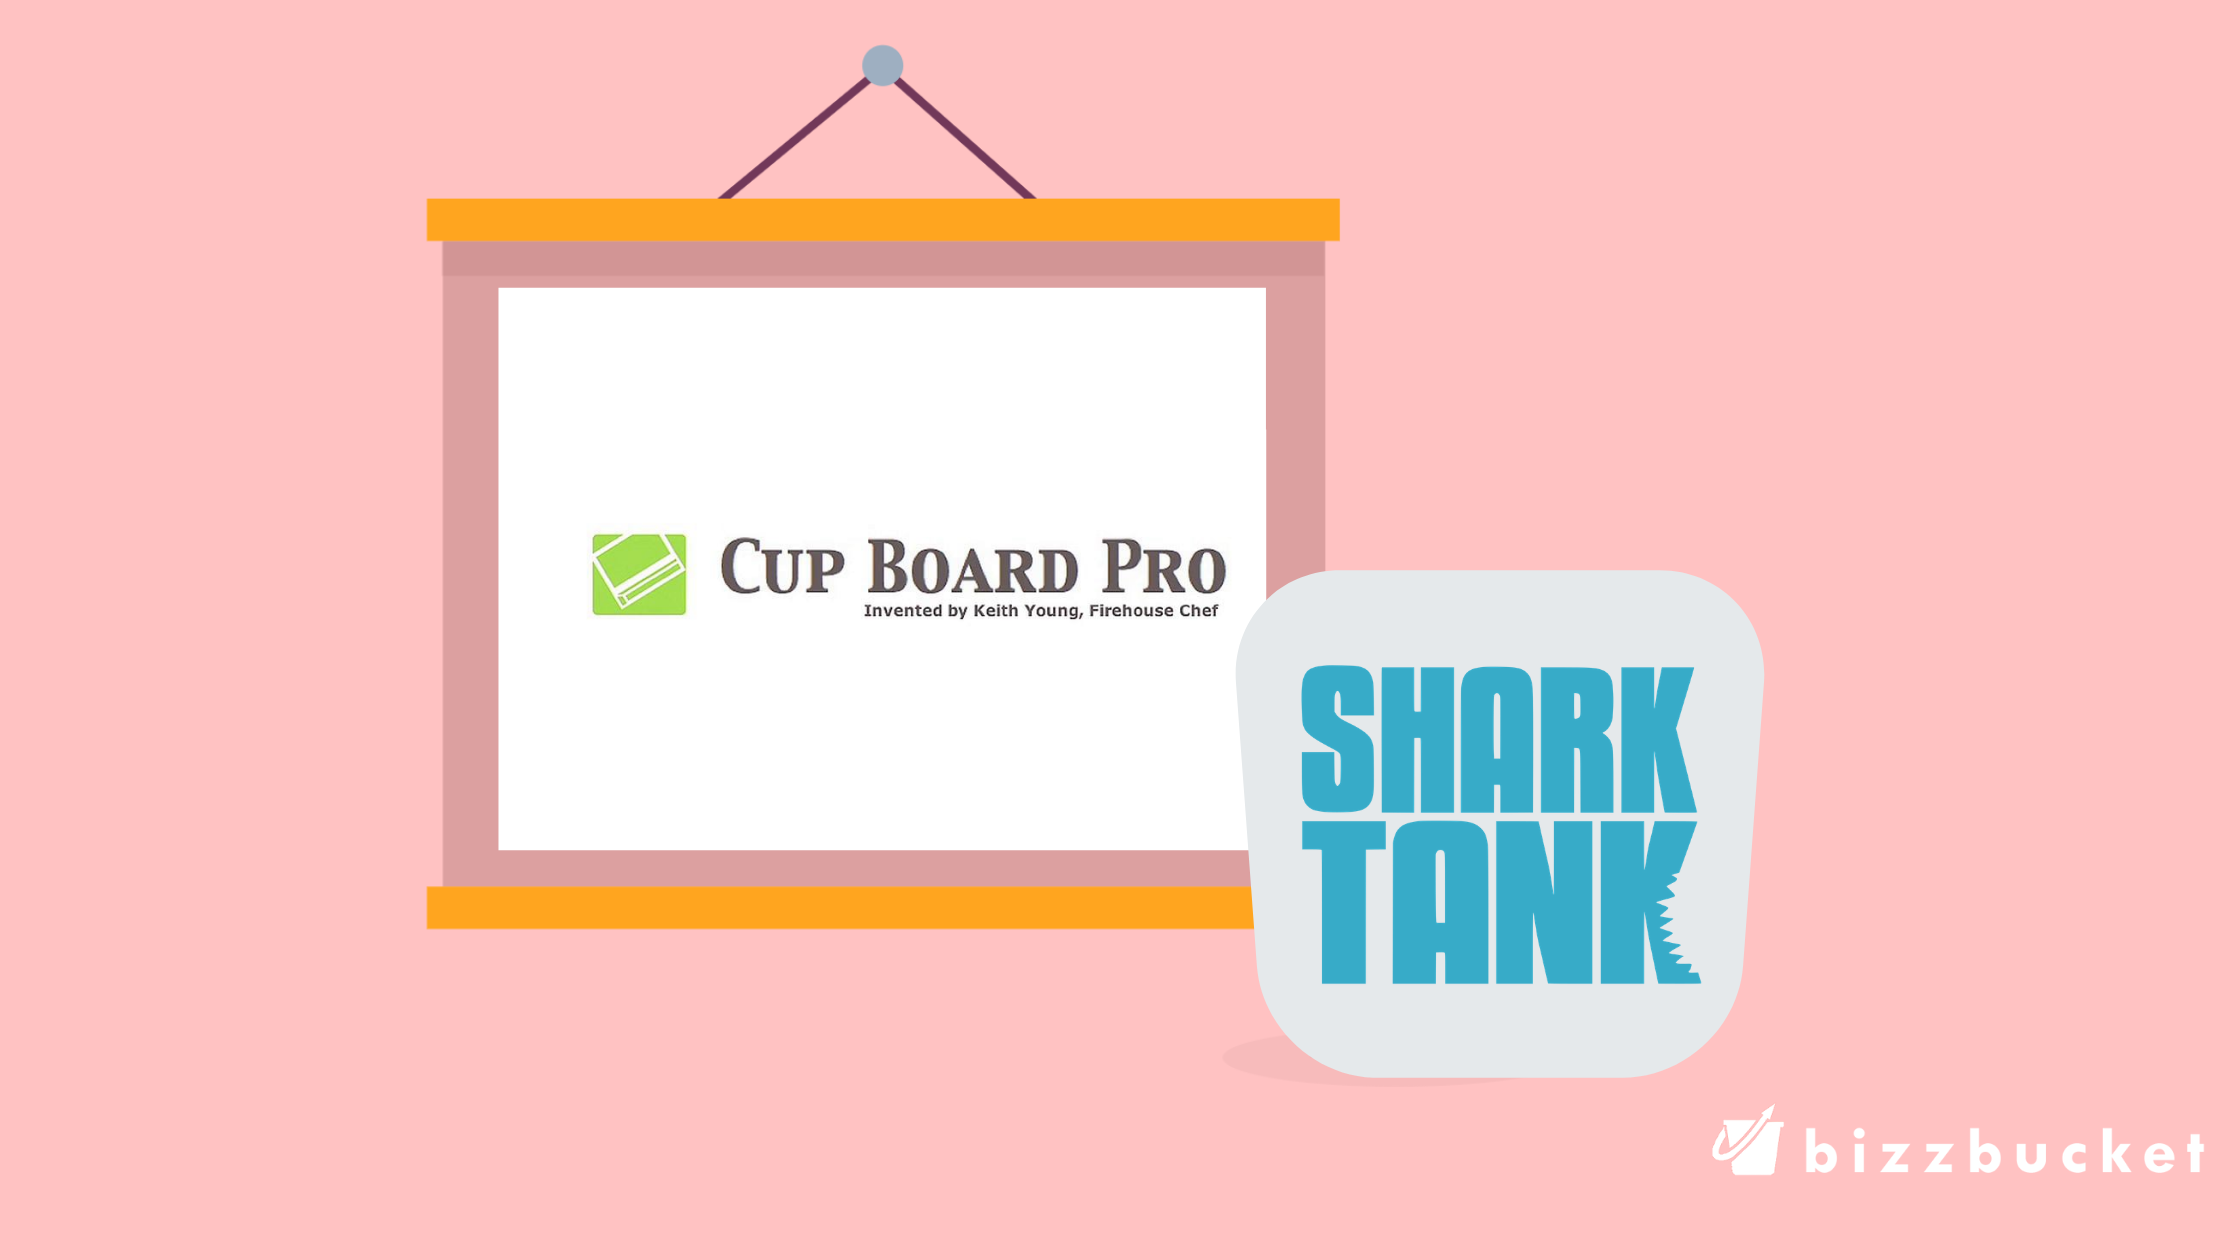 cup board pro logo